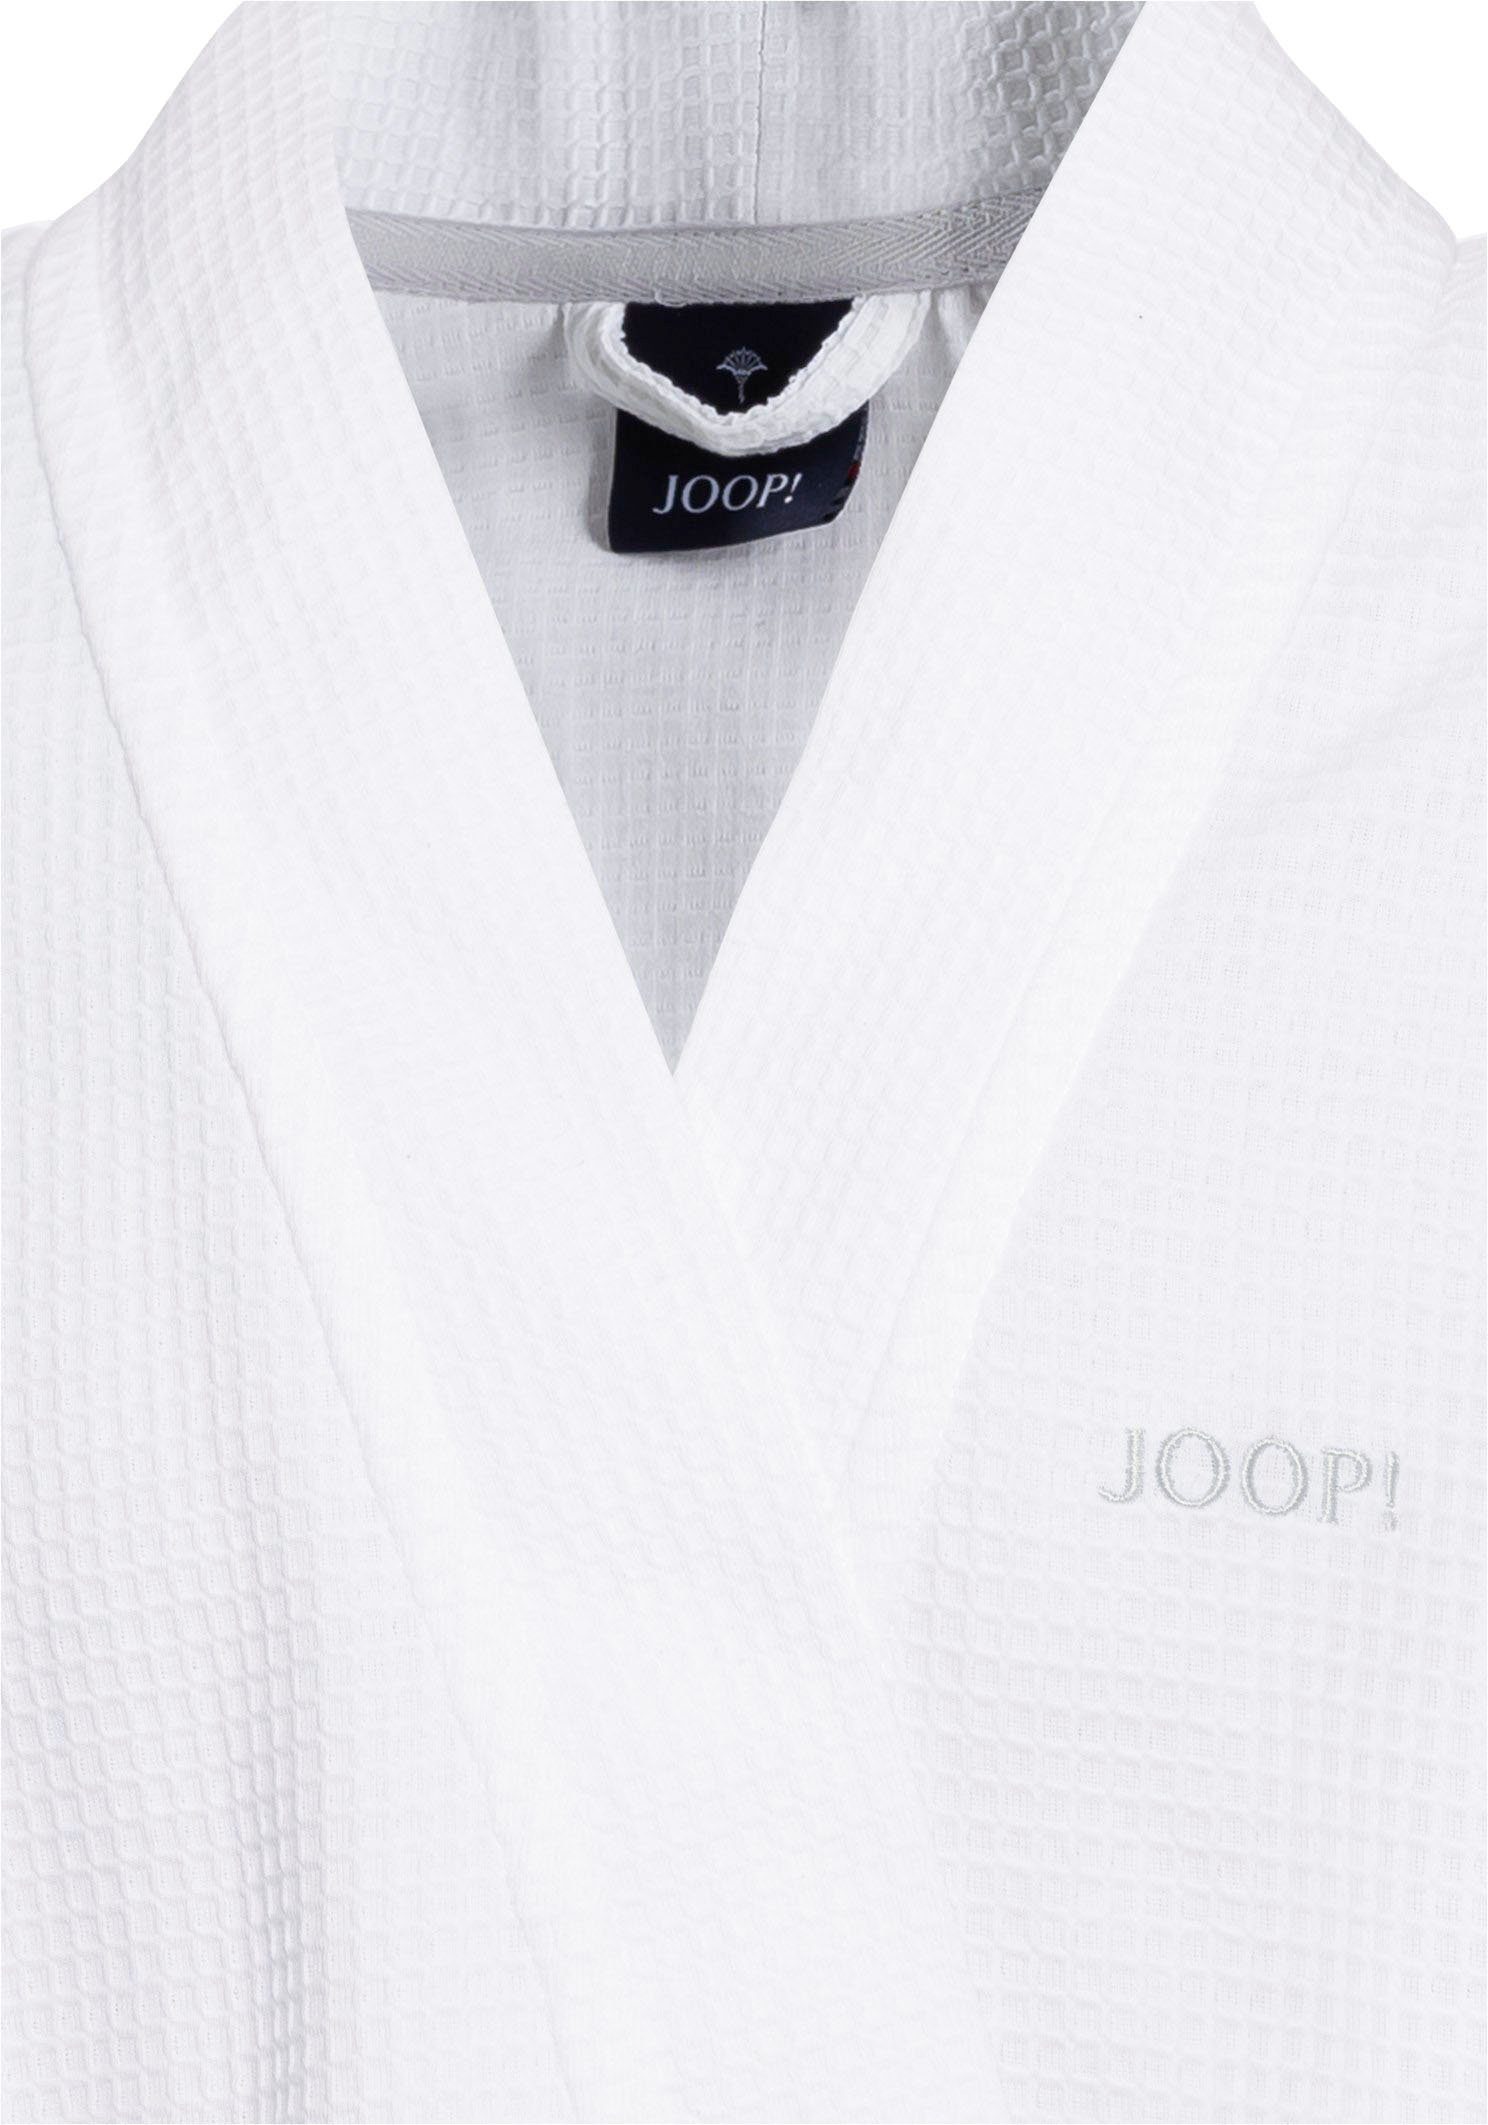 Herrenbademantel Joop! mit weiß Logo-Stick UNI-PIQUÉ, Kurzform, Kimono-Kragen, Baumwolle, kontrastigem Gürtel,